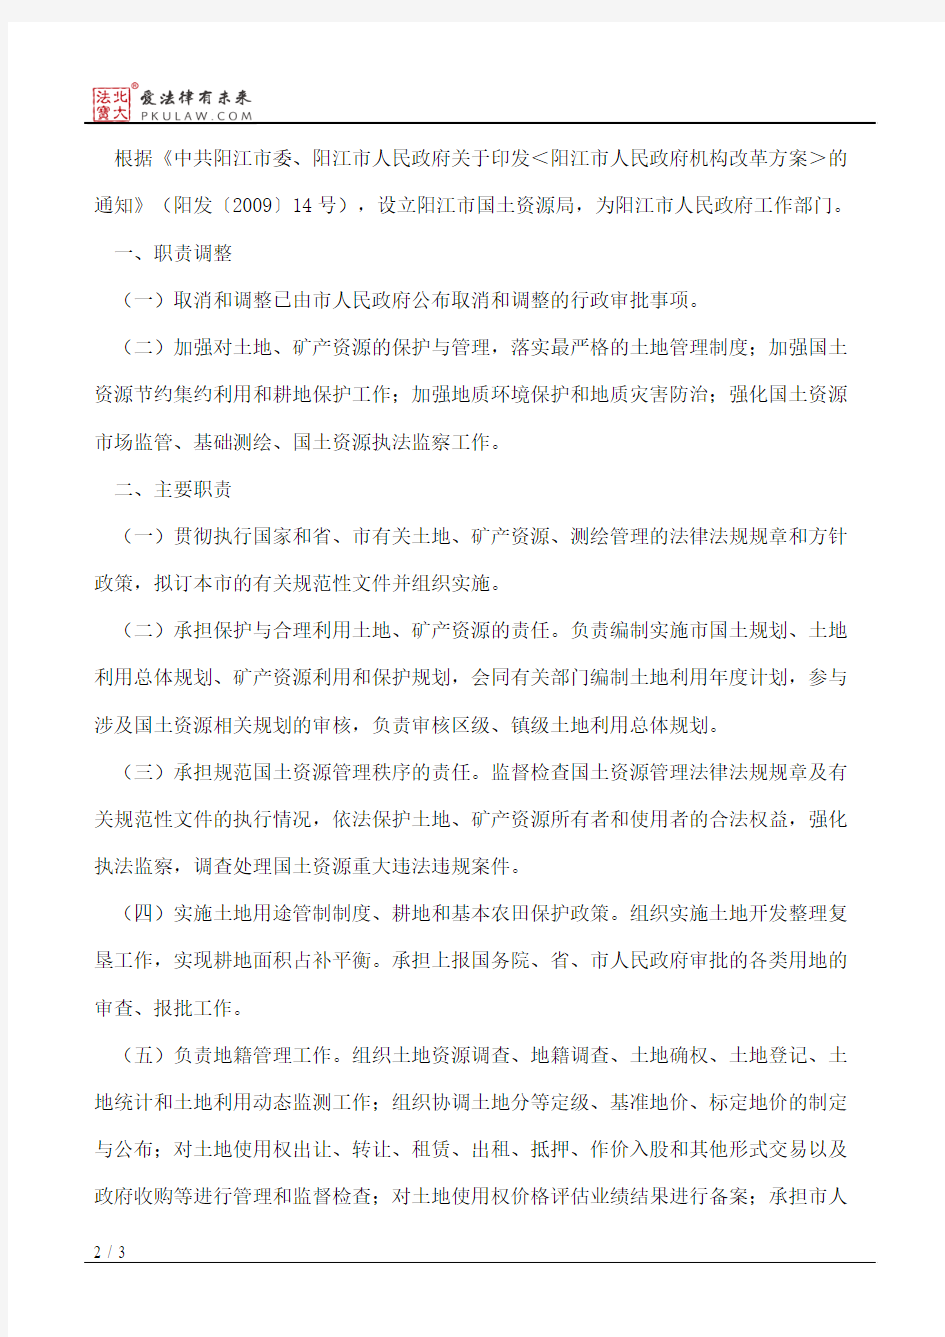 阳江市人民政府办公室印发阳江市国土资源局主要职责内设机构和人